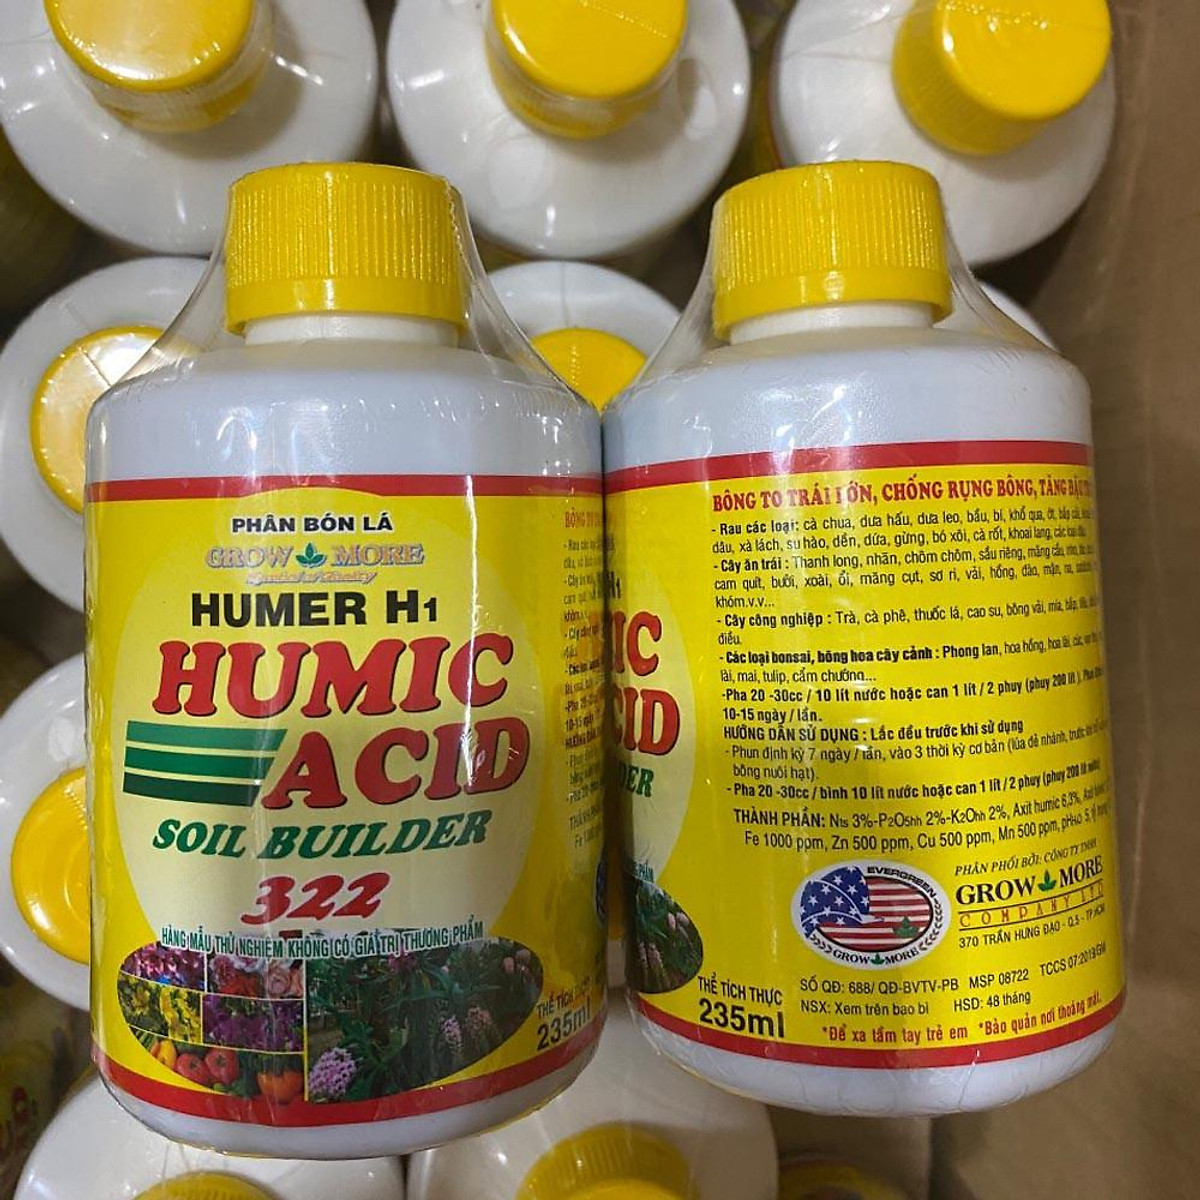 Humic acid 322 phân bón lá hữu cơ cho cây cảnh chai 235ml